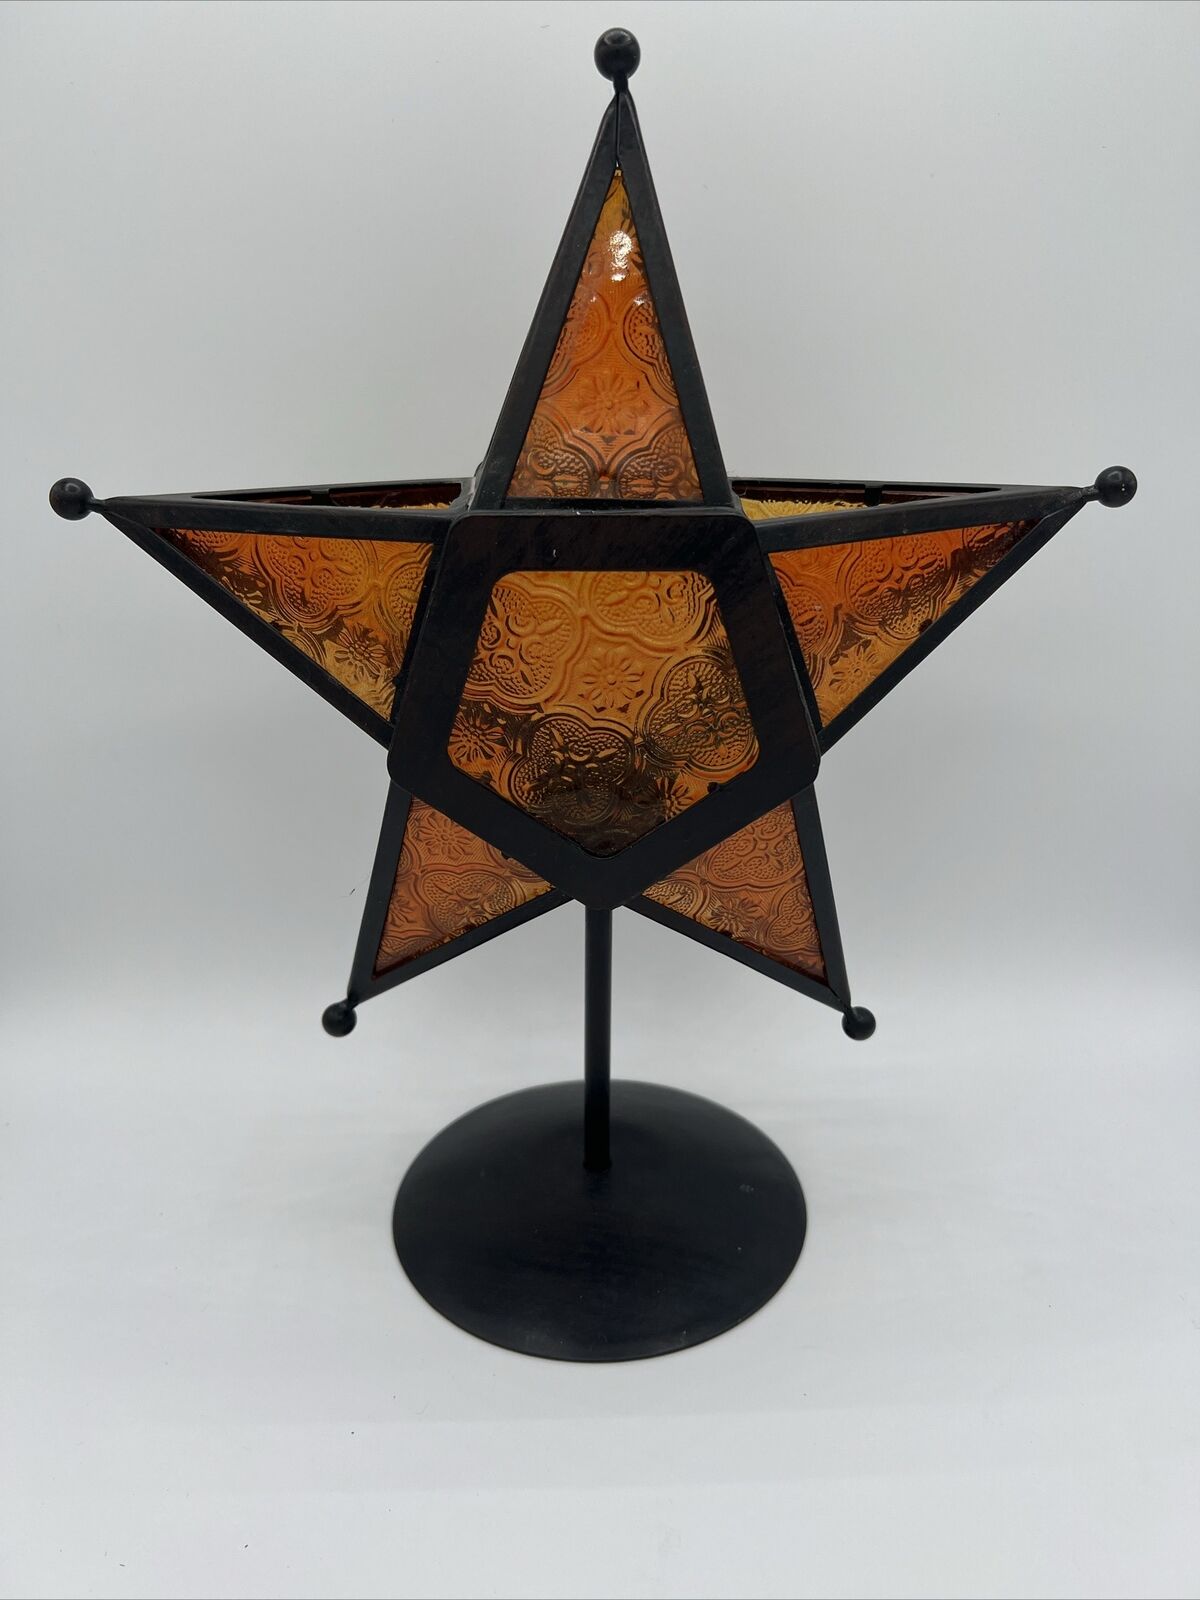 Moravian Stamped Glass Star Shaped Tea Lite Candle Holder- Gold/ Orange